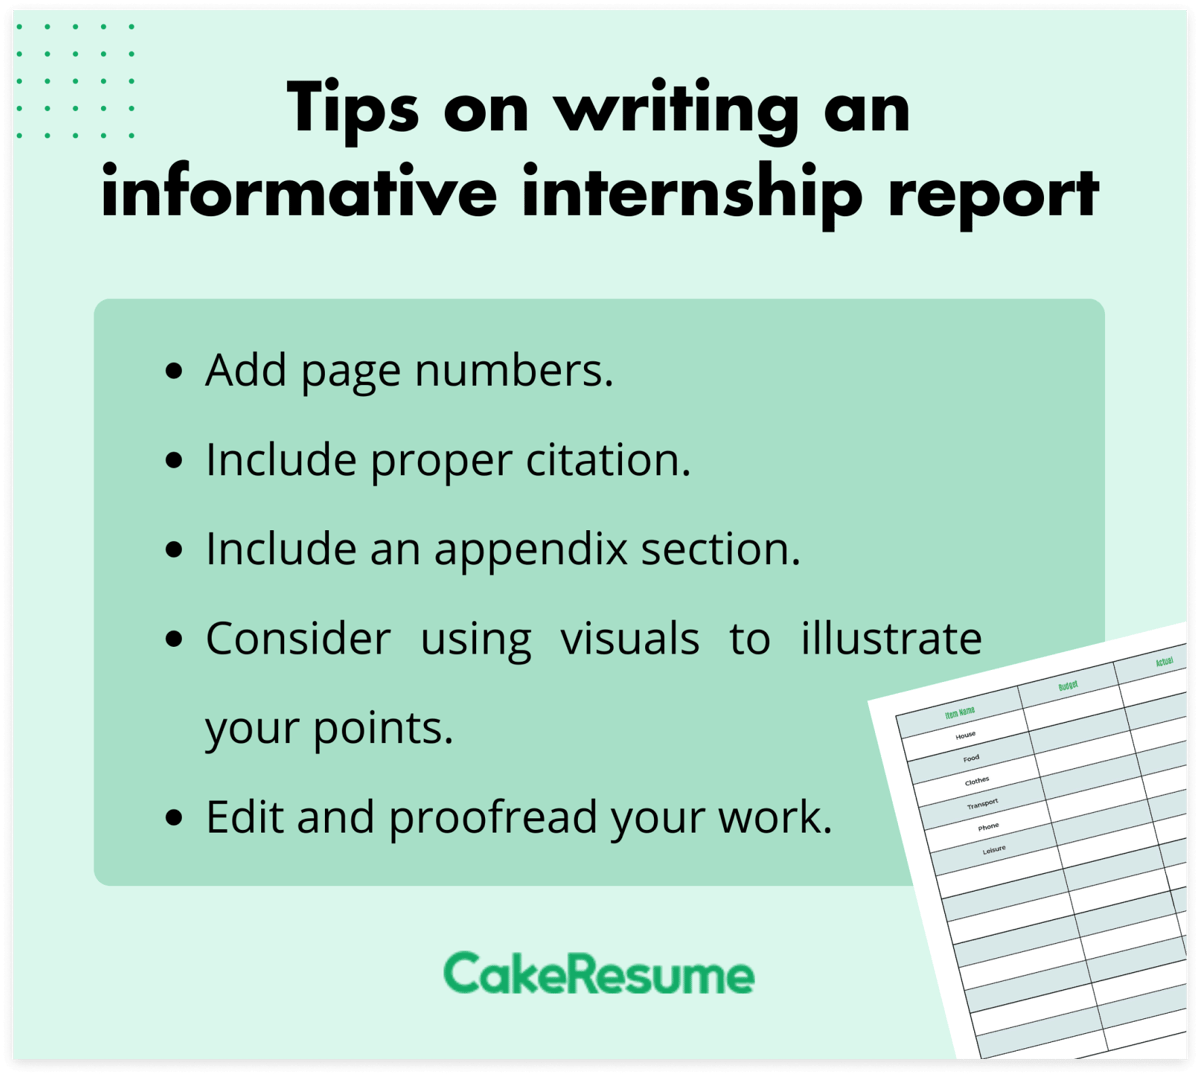 internship report tips